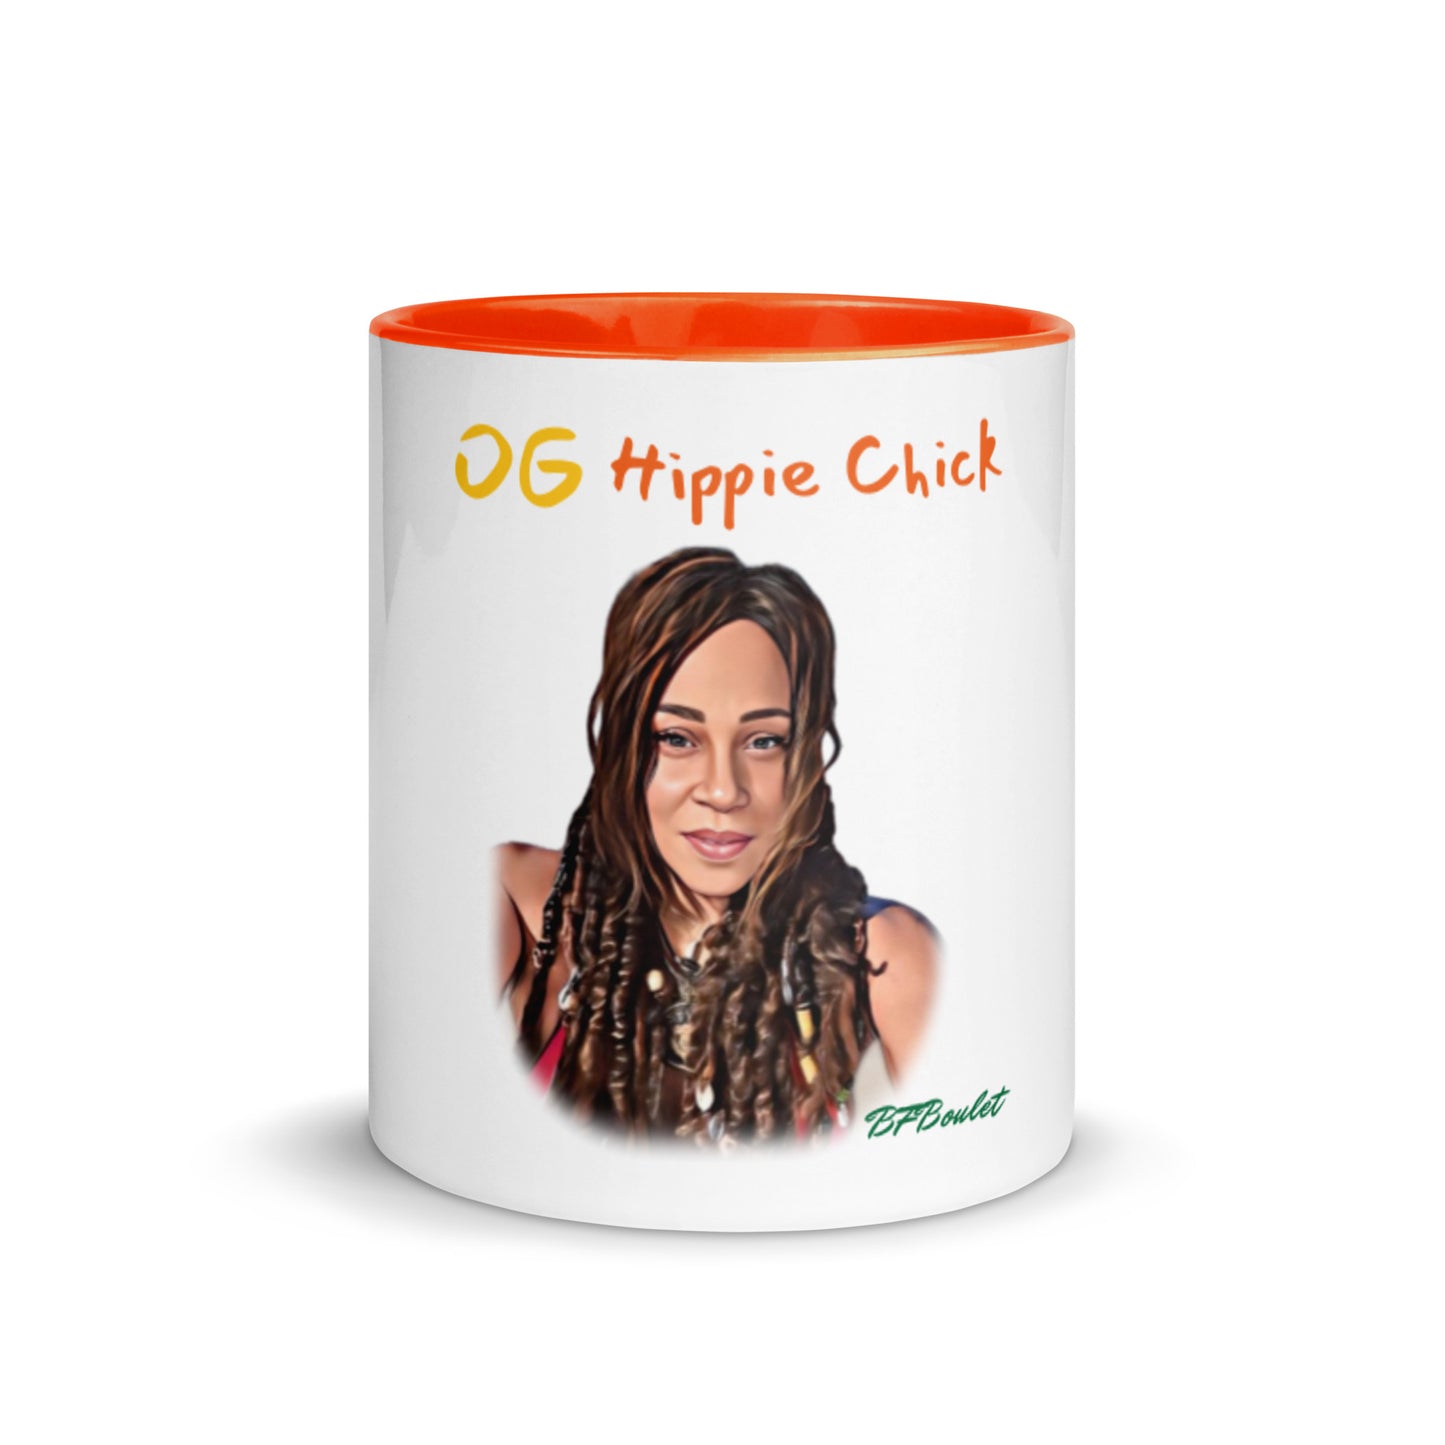 Mug Couleur Blanche - OG Hippie Chick (BFBoulet)